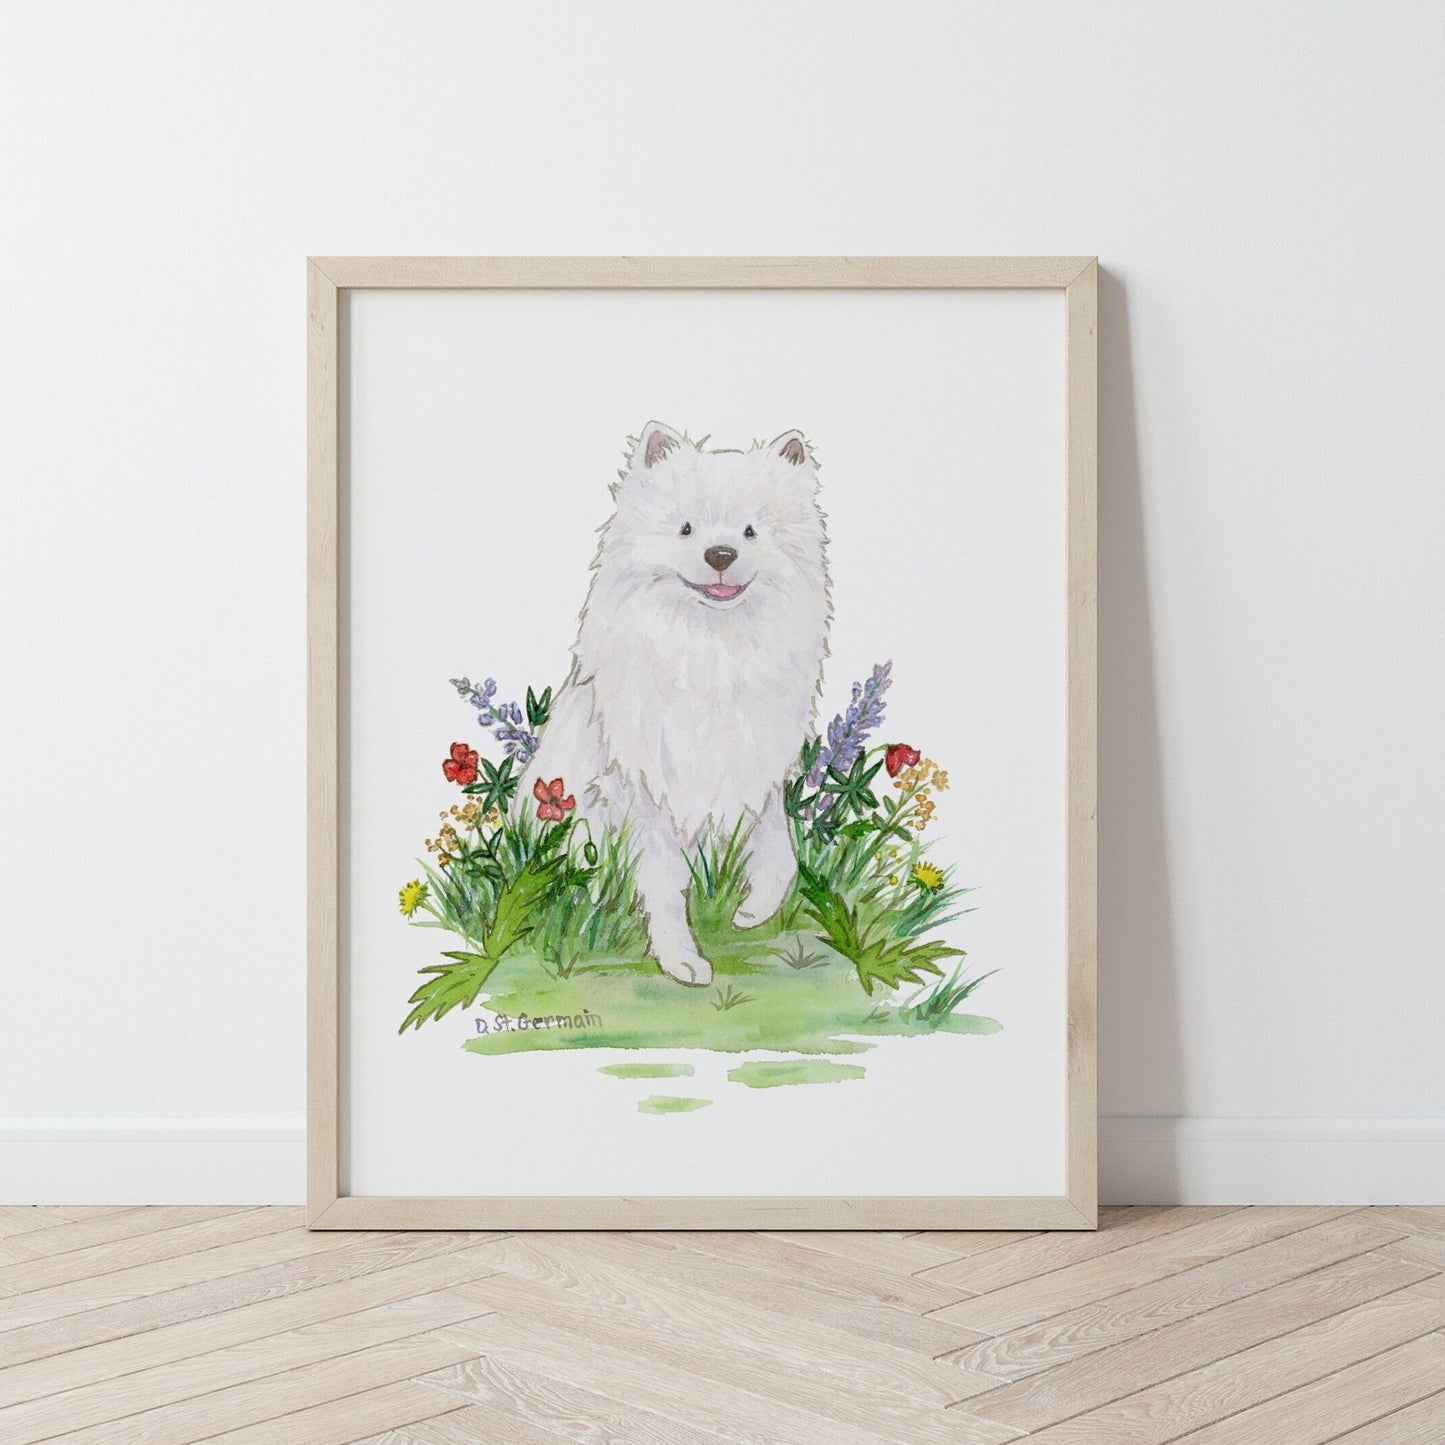 American Eskimo Art, Japanese Spitz Art, Pomeranian, Eskie Gift, Watercolor Dog Art, Dog Lover Gift, Dog Nursery Art, Children's Wall Art